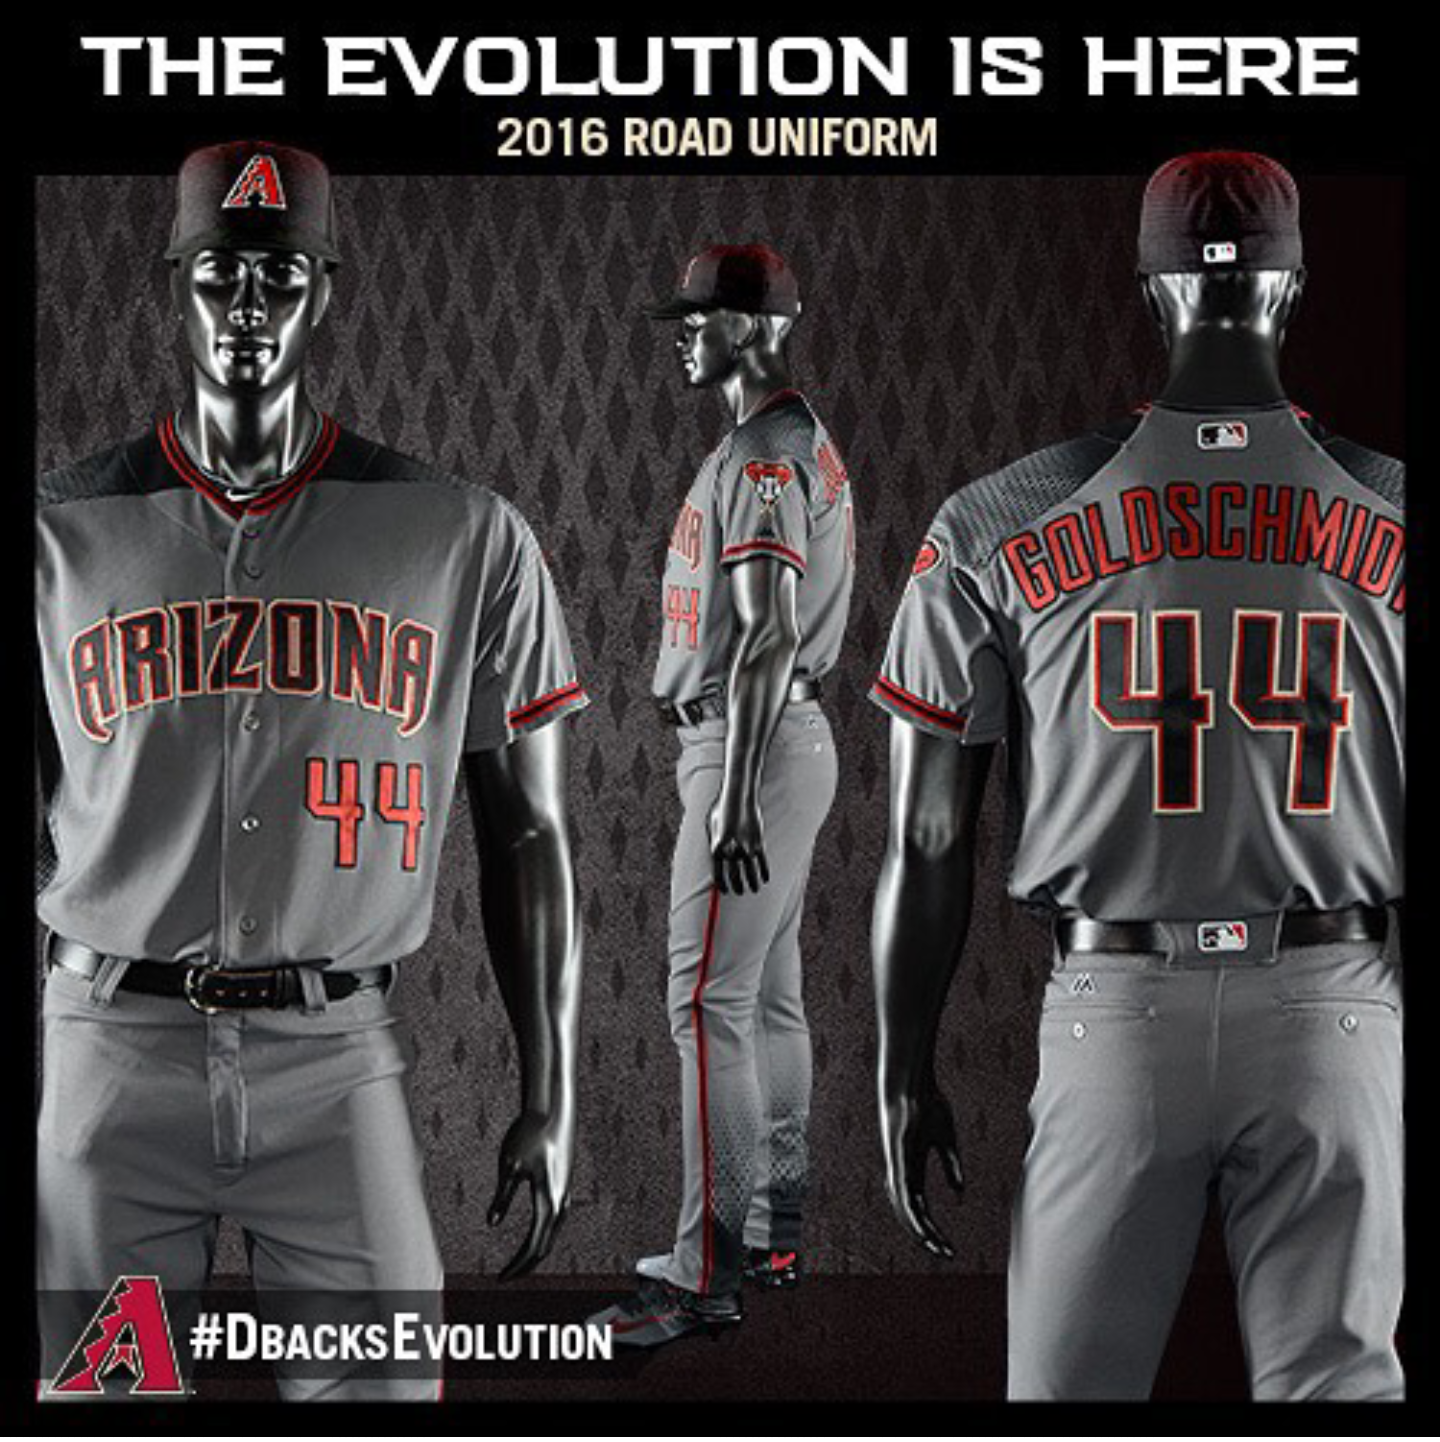 El Clutch Deportivo: Los nuevos uniformes alternativos que usarán en el  2016 los Arizona Diamondbacks de la MLB